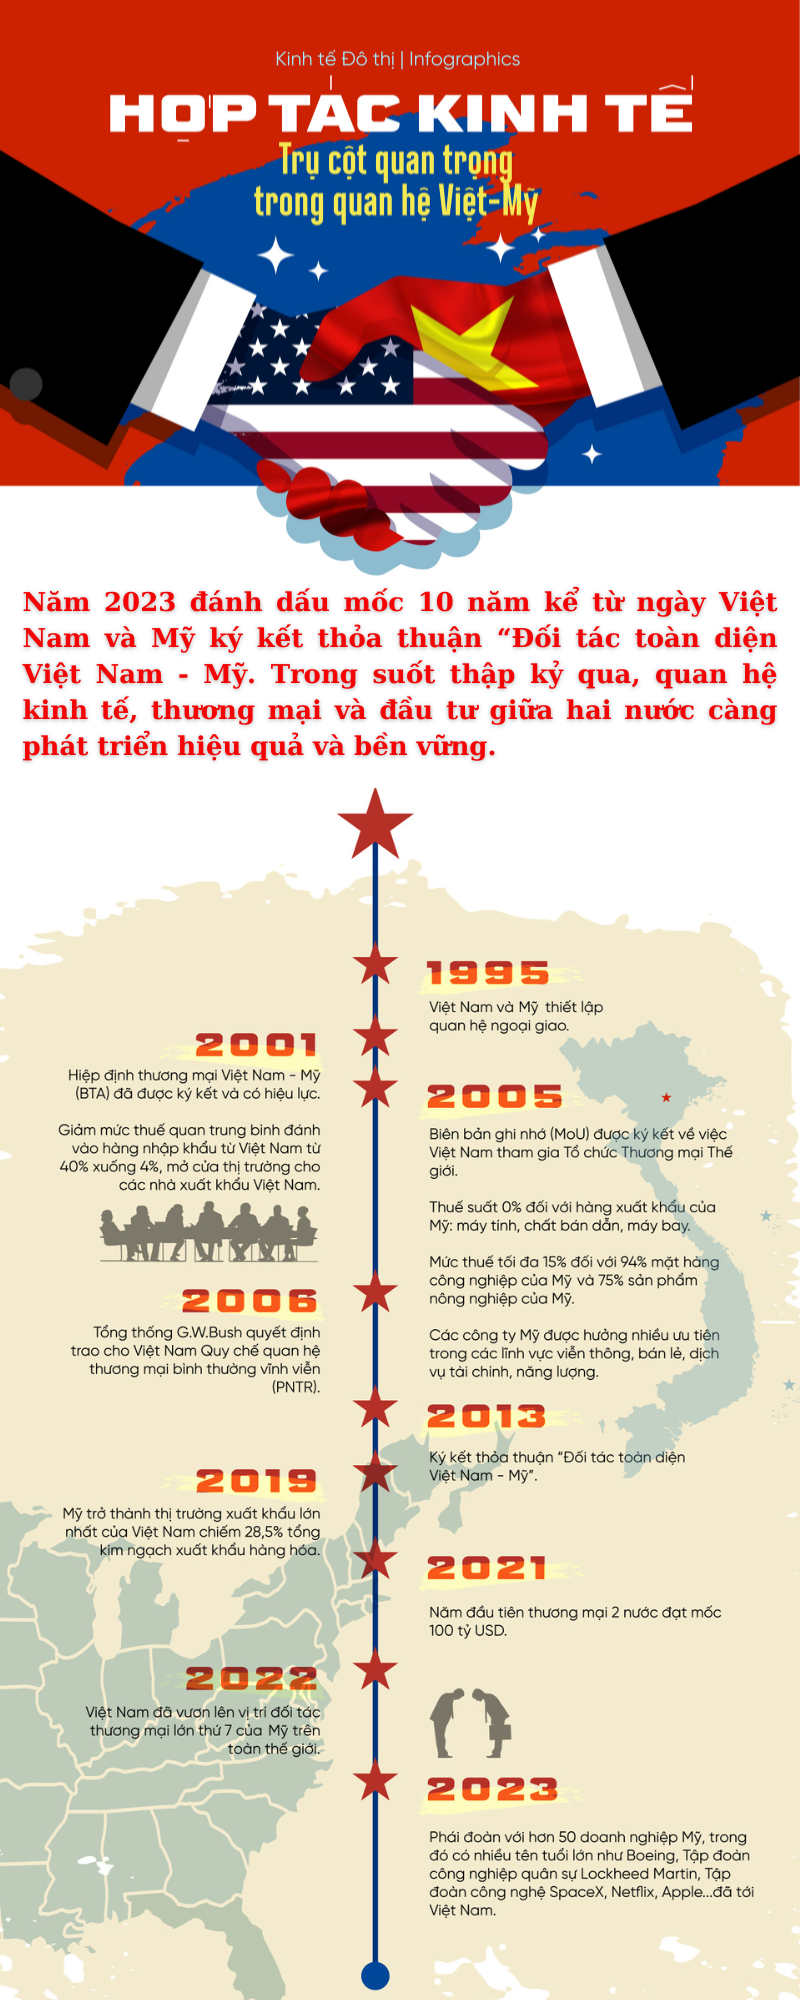 [Infographic] Hợp tác kinh tế - Trụ cột quan trọng trong quan hệ Việt Nam-Mỹ - Ảnh 1